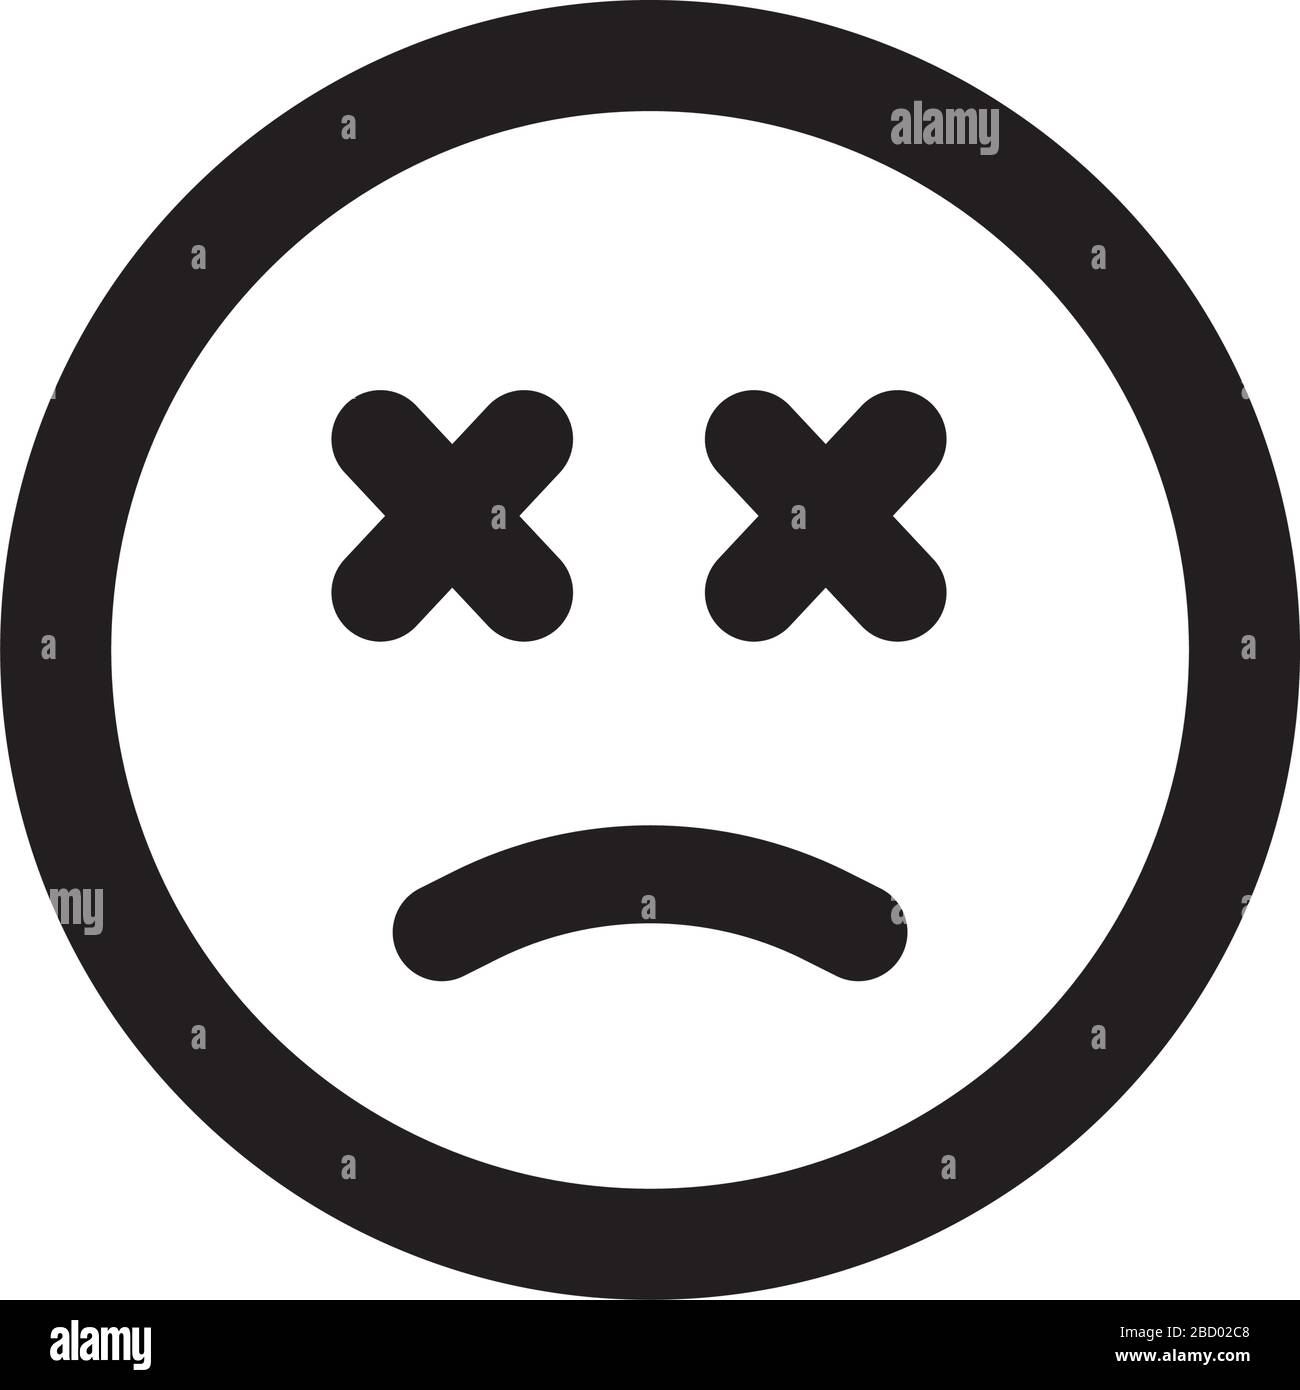 sad, unhappy face icon Stock Vector